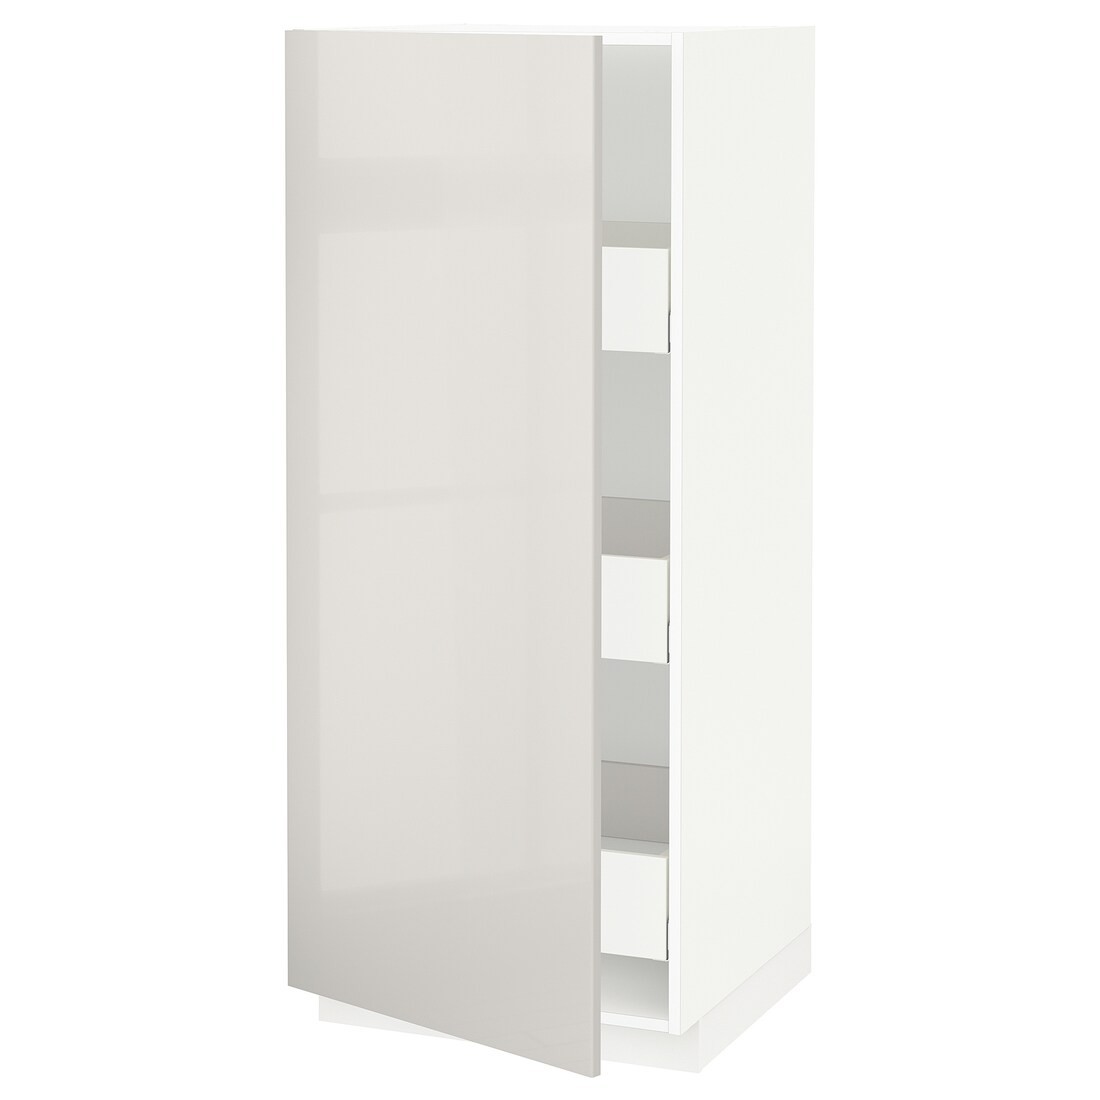 METOD МЕТОД / MAXIMERA МАКСИМЕРА Шкаф высокий с ящиками, белый / Ringhult светло-серый, 60x60x140 см